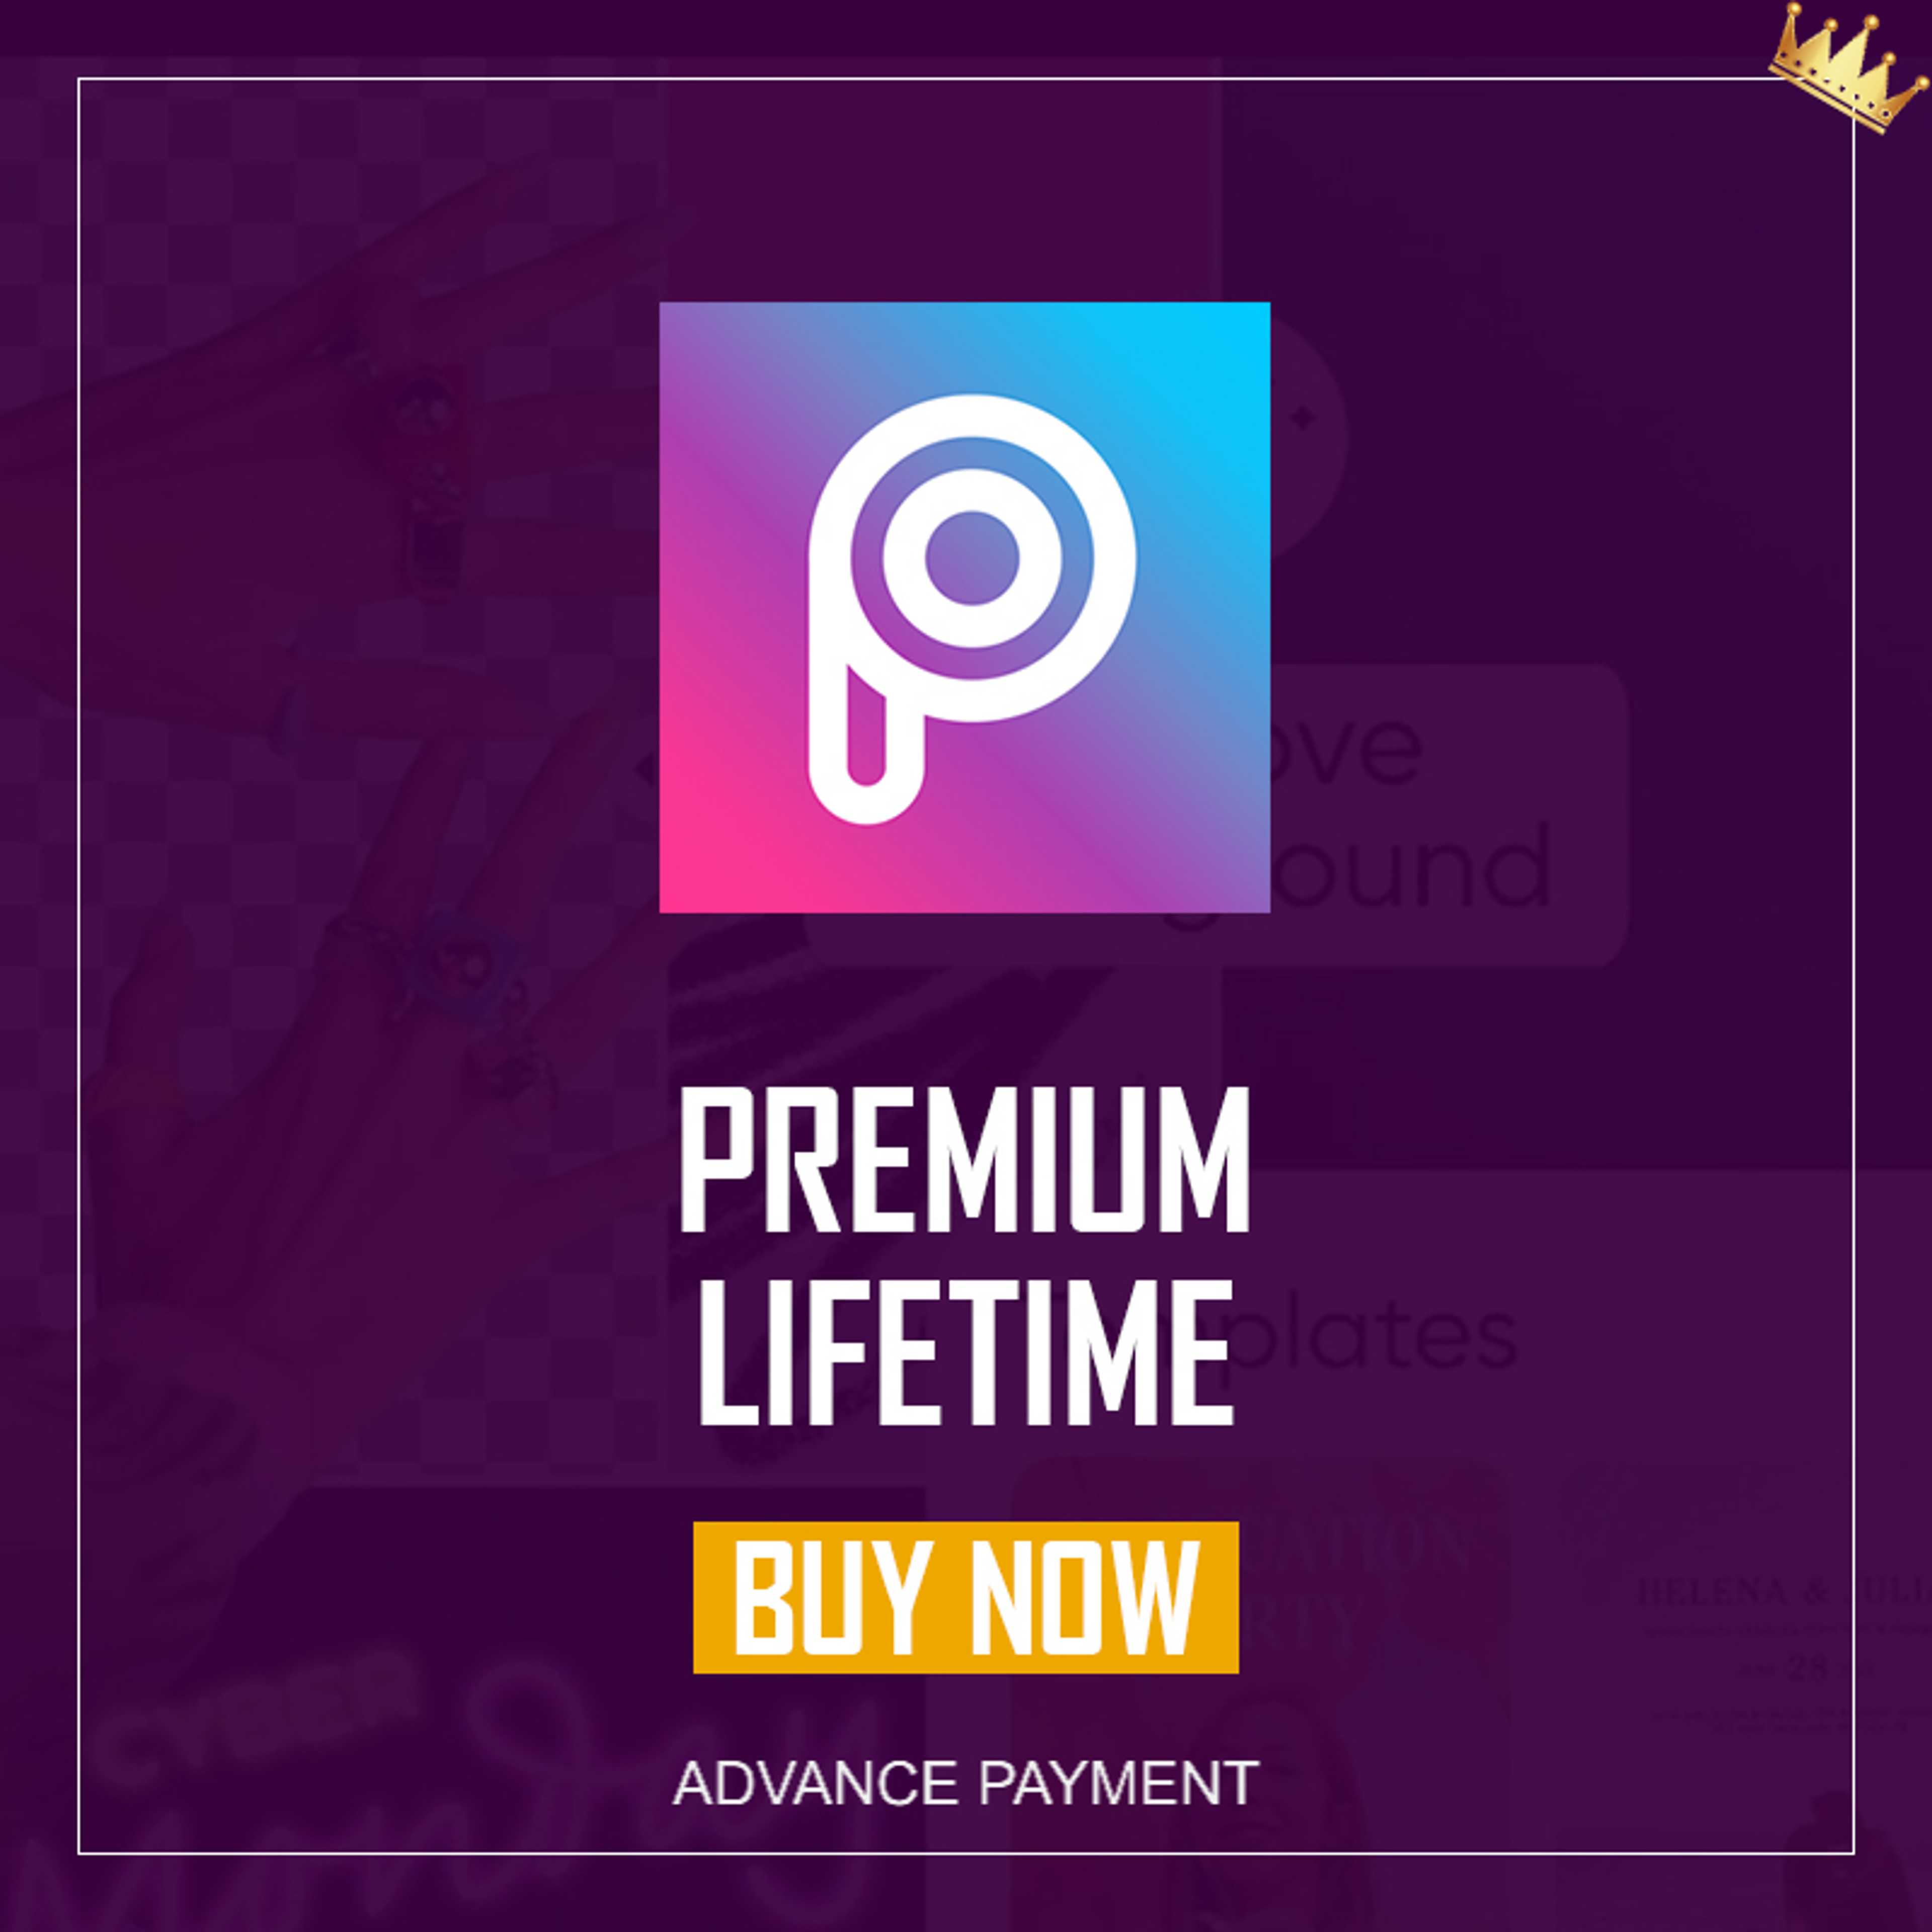 PicsArt Pro lifetime activation 